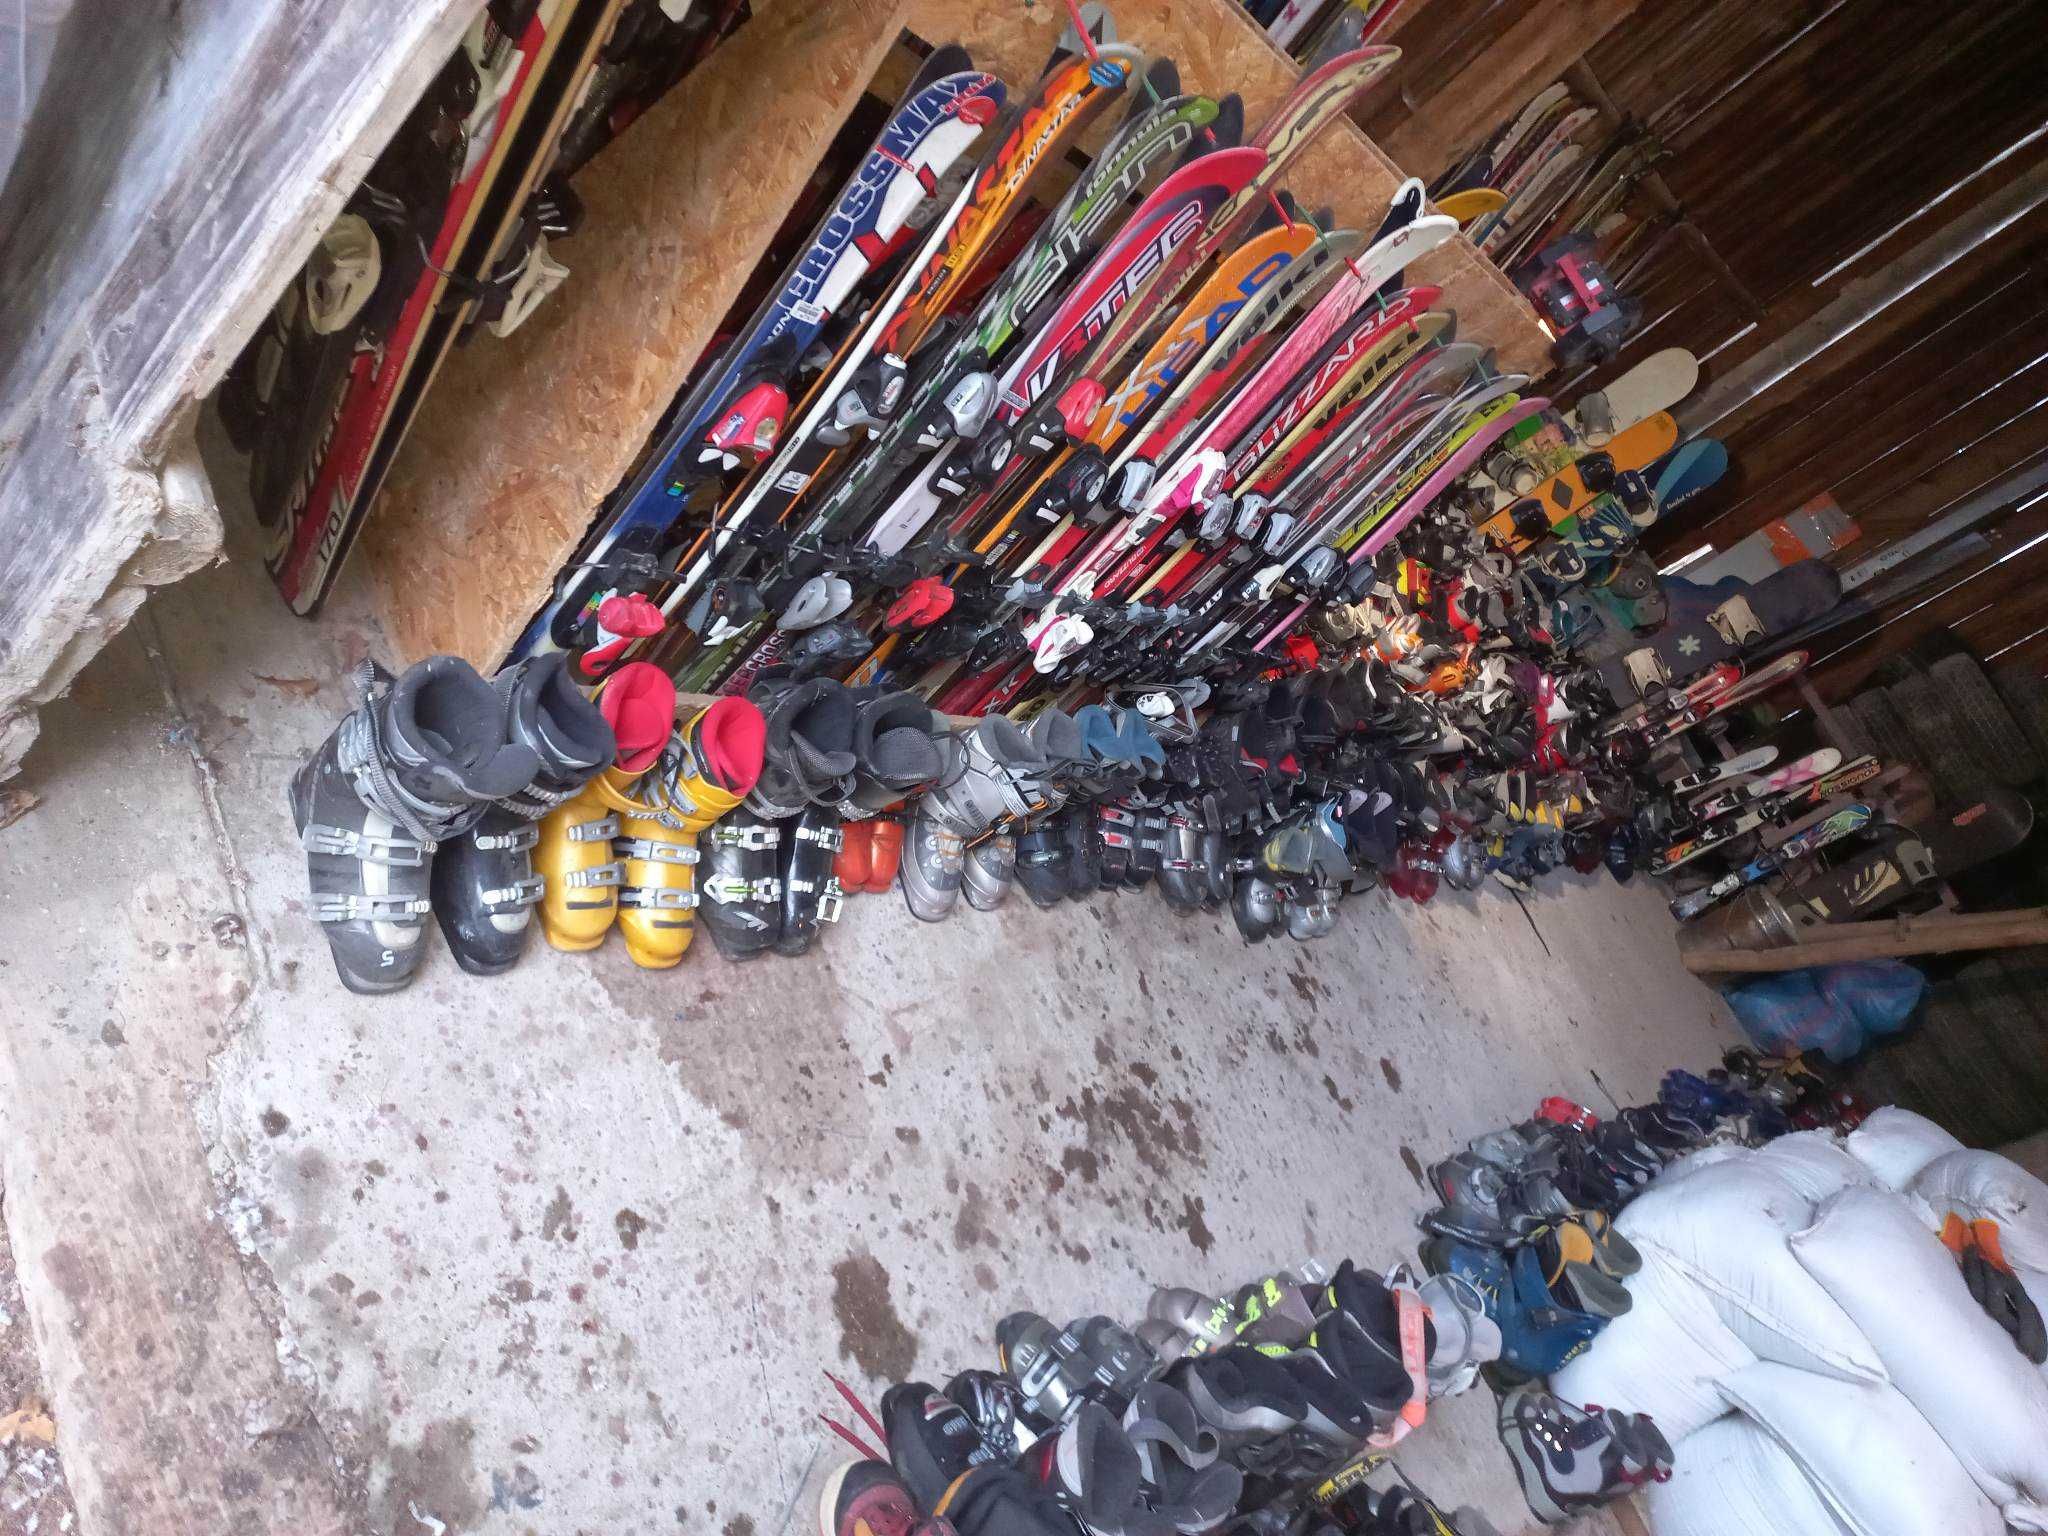 Narty buty narciarskie hurtowo